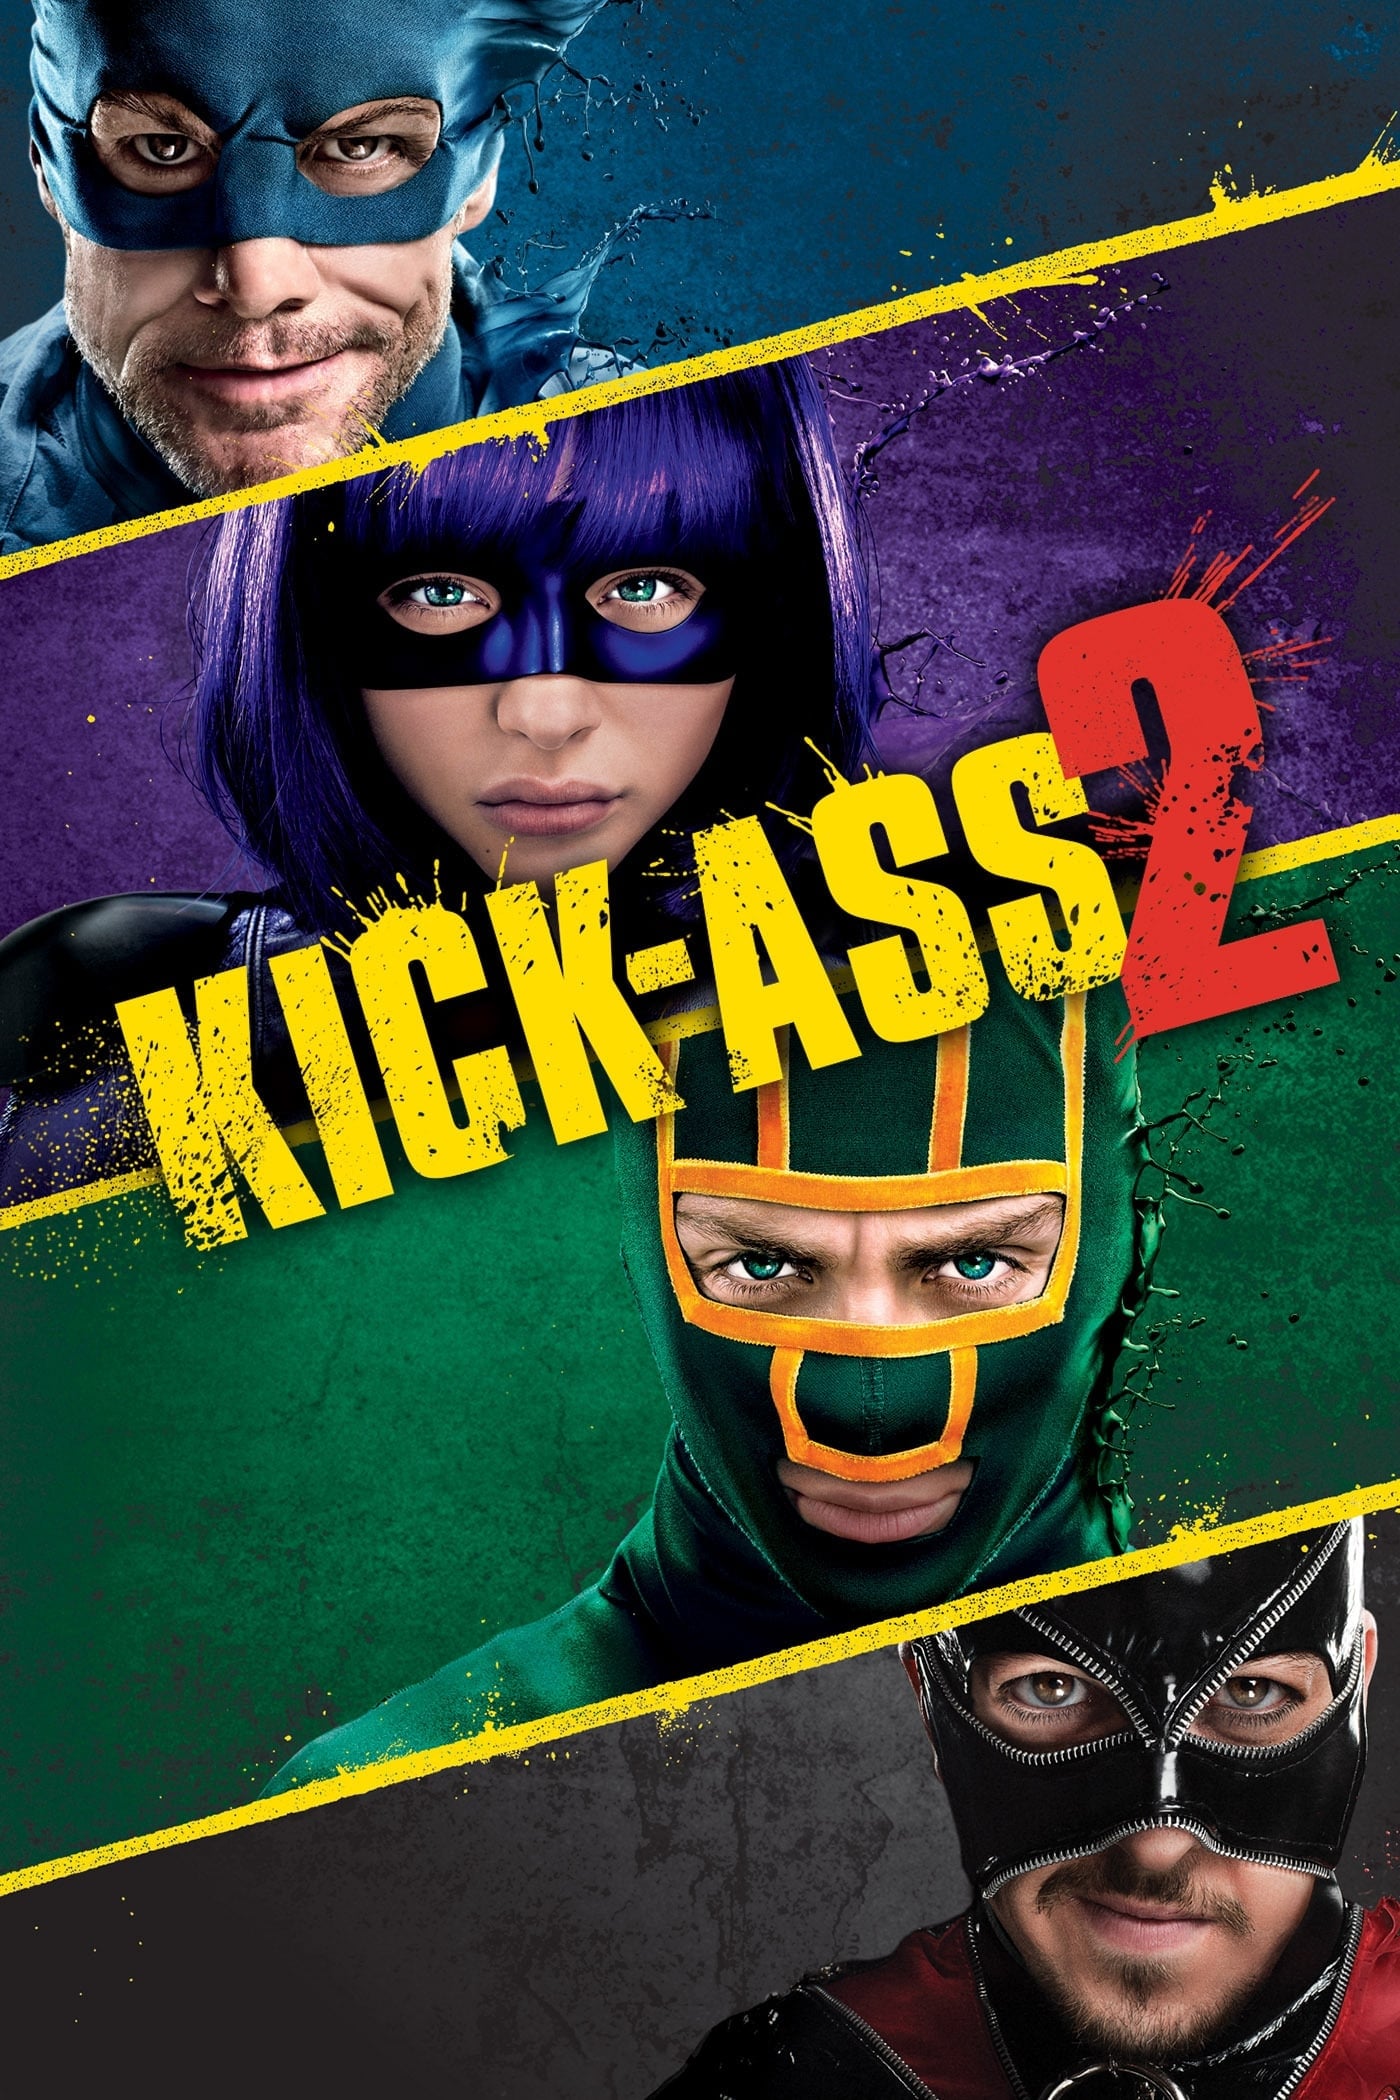 Kick-Ass 2: Con un par (2013)